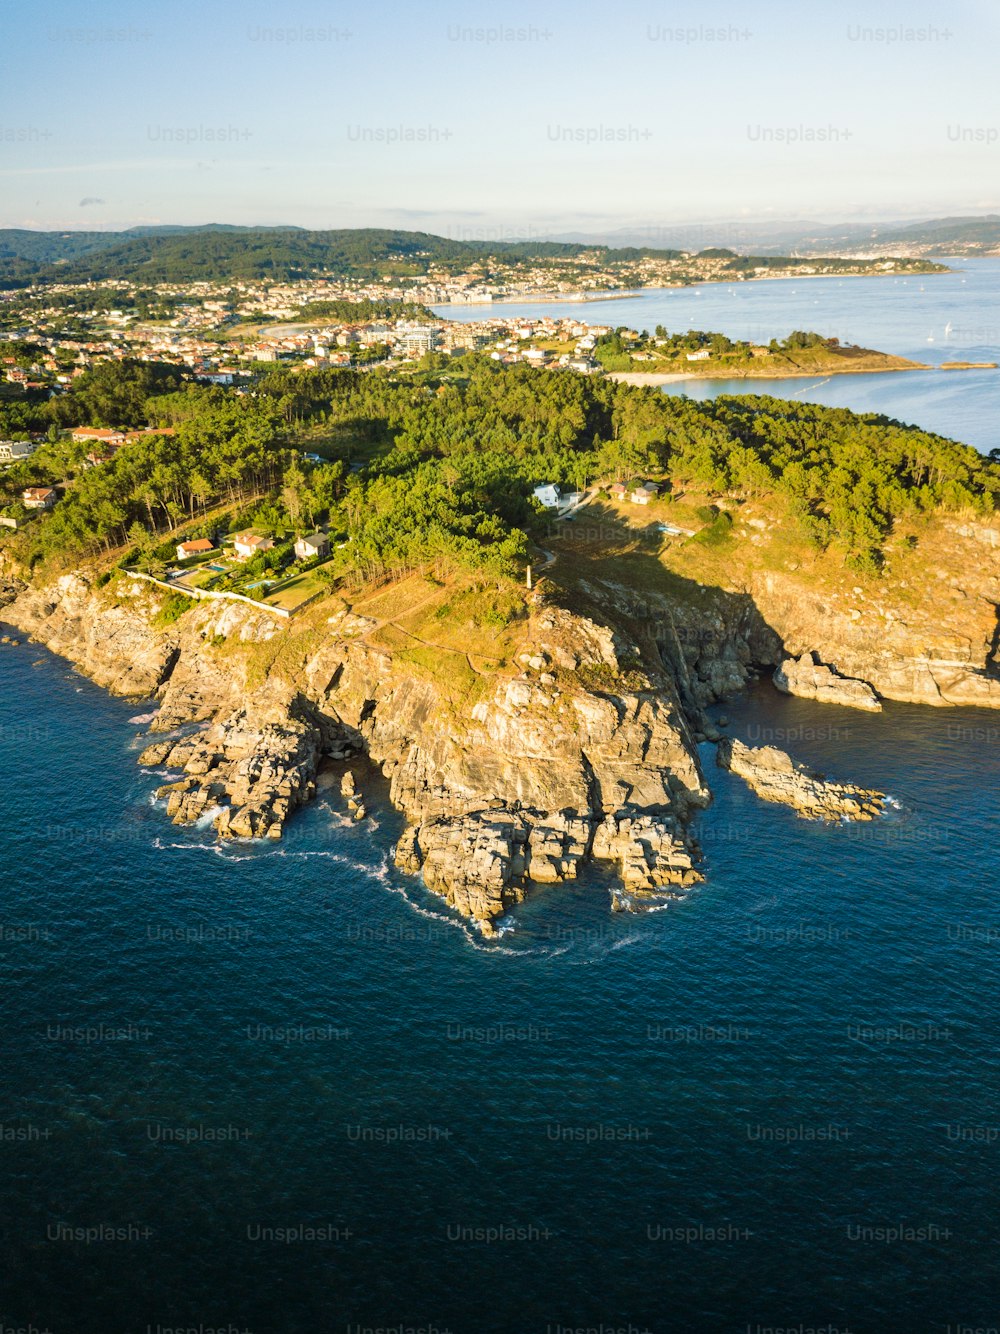 Veduta aerea della costa galiziana all'inizio della Ria de Pontevedra, dove l'oceano Atlantico incontra la terraferma.